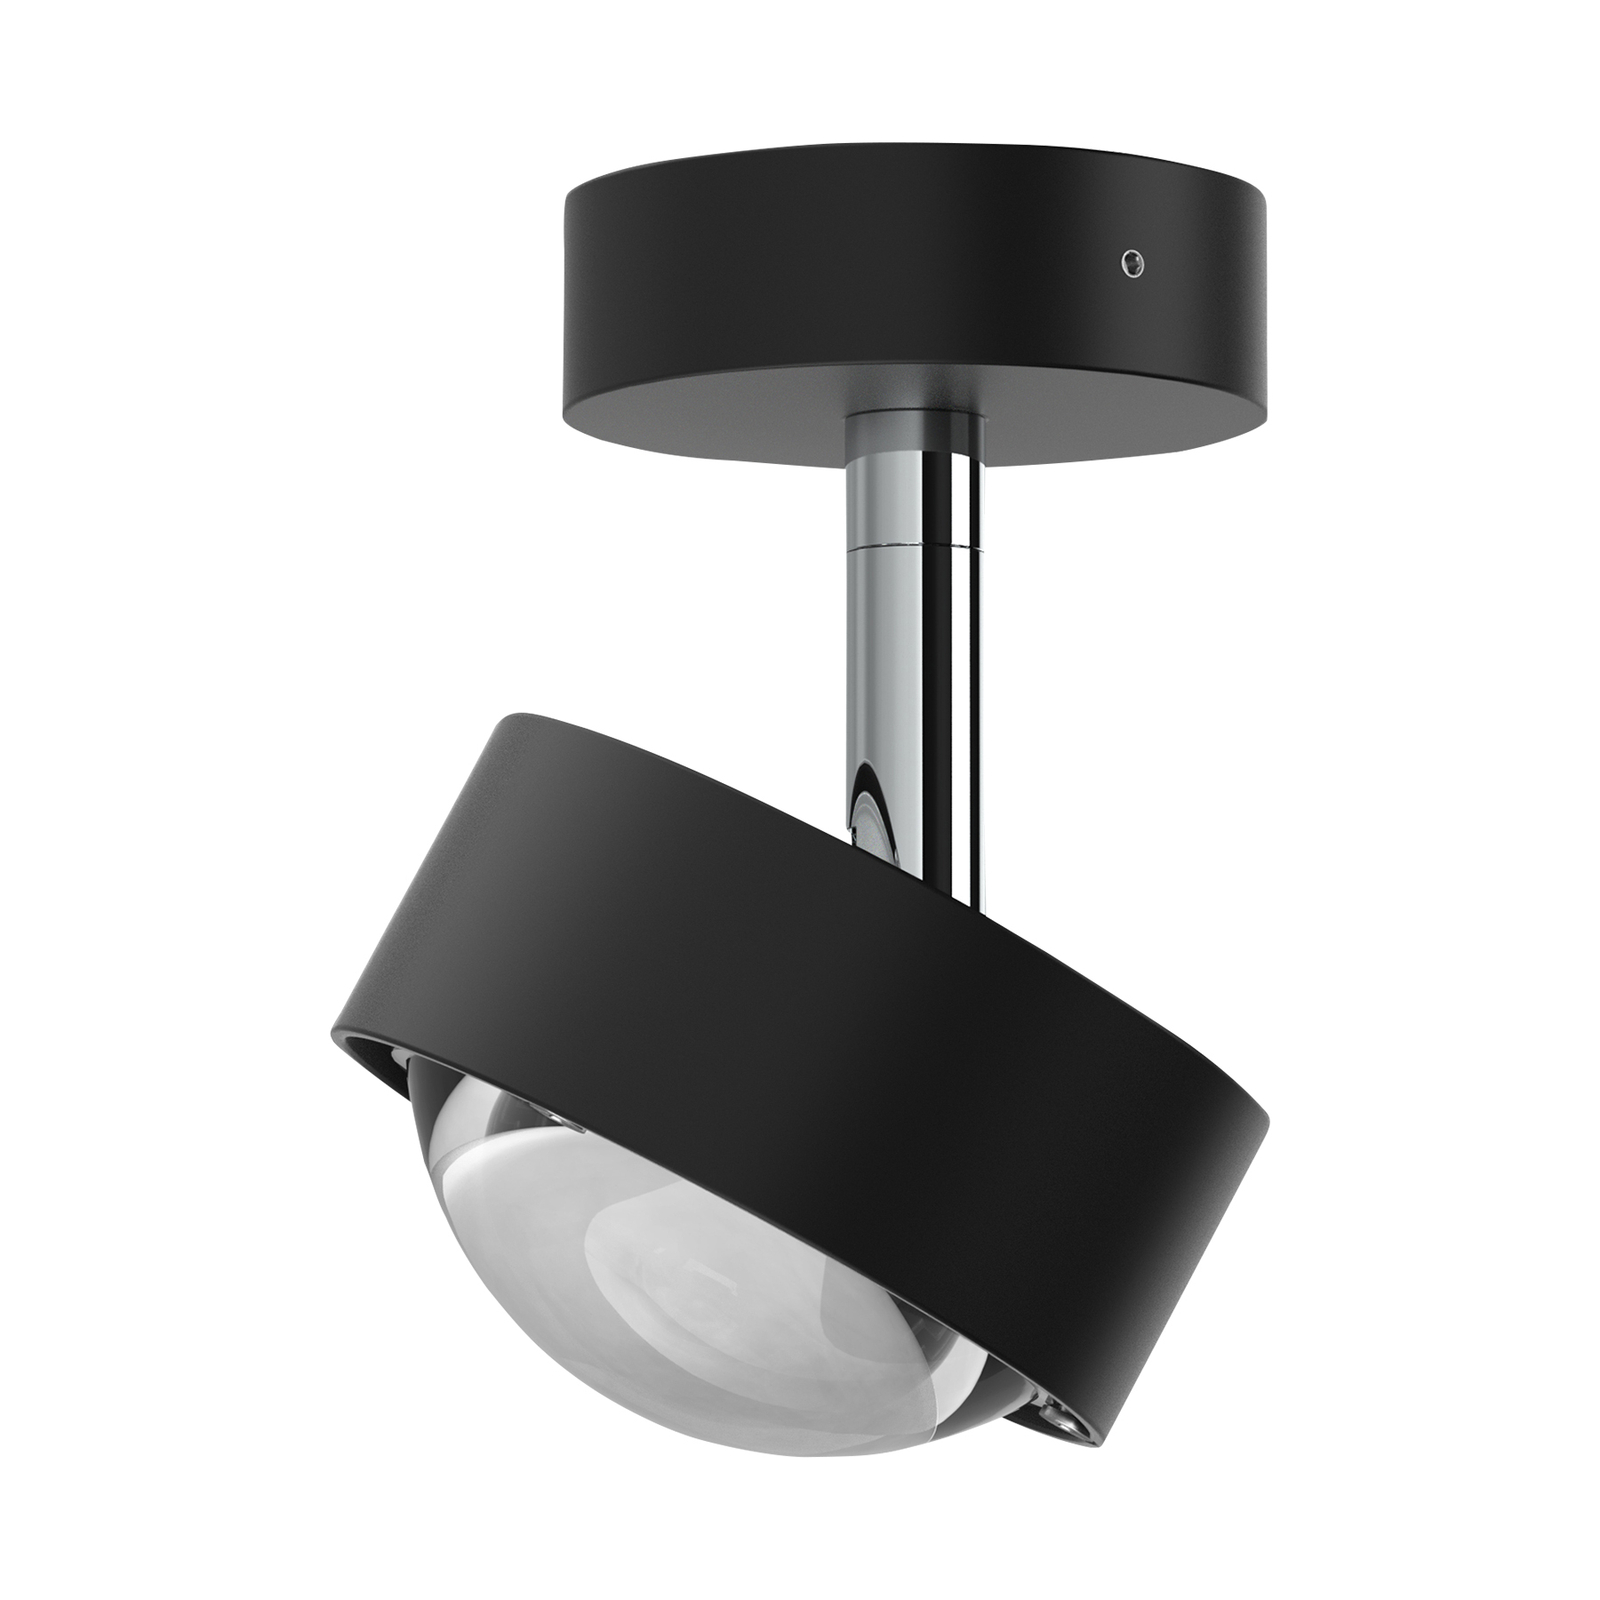 Puk Mini Turn spot LED lentille claire à 1 lampe noir mat